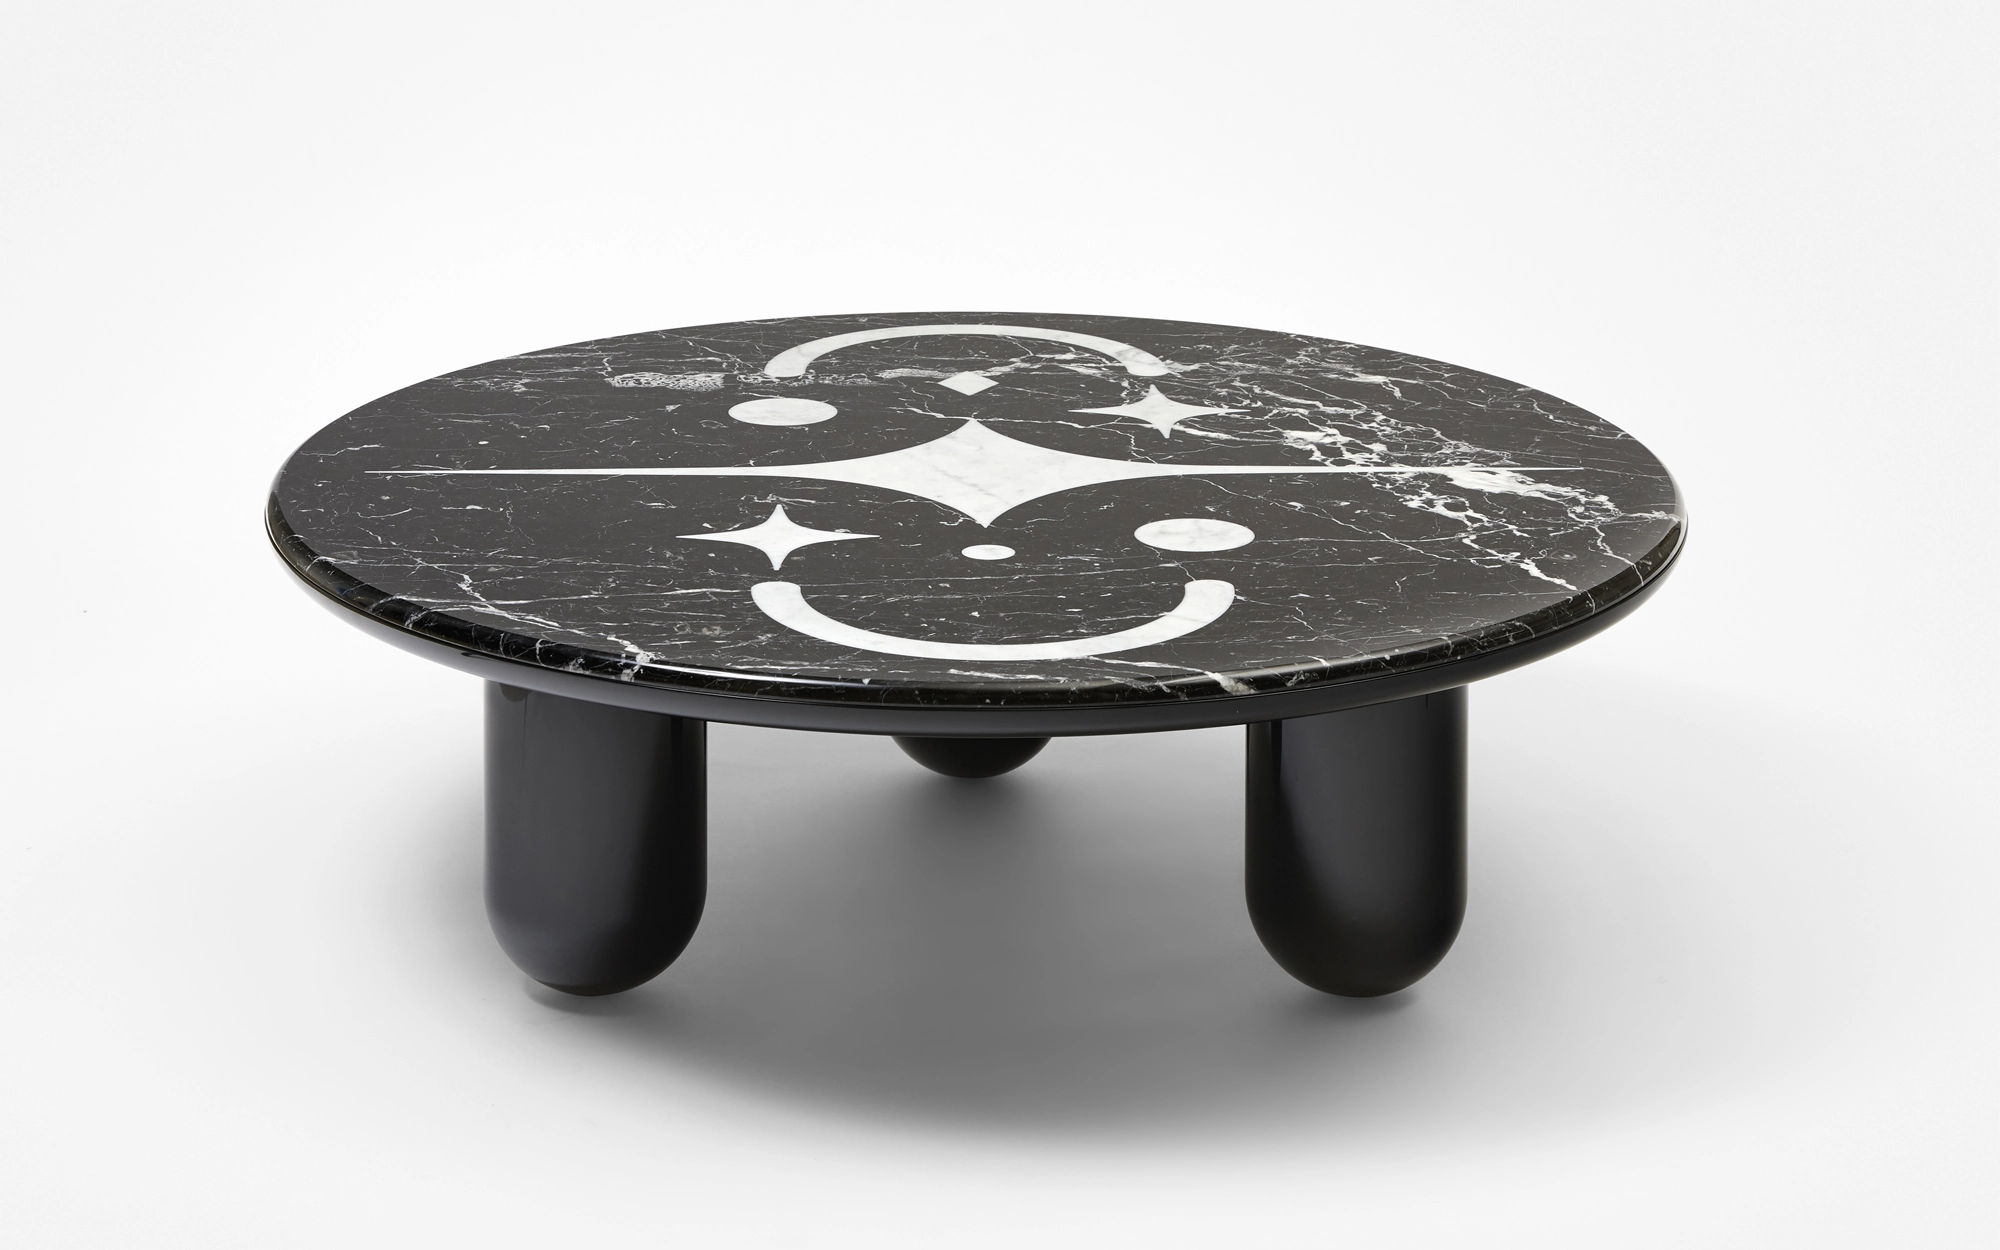 Hymy Round coffee table - Black & White - Jaime Hayon - Design Miami/ 2019.